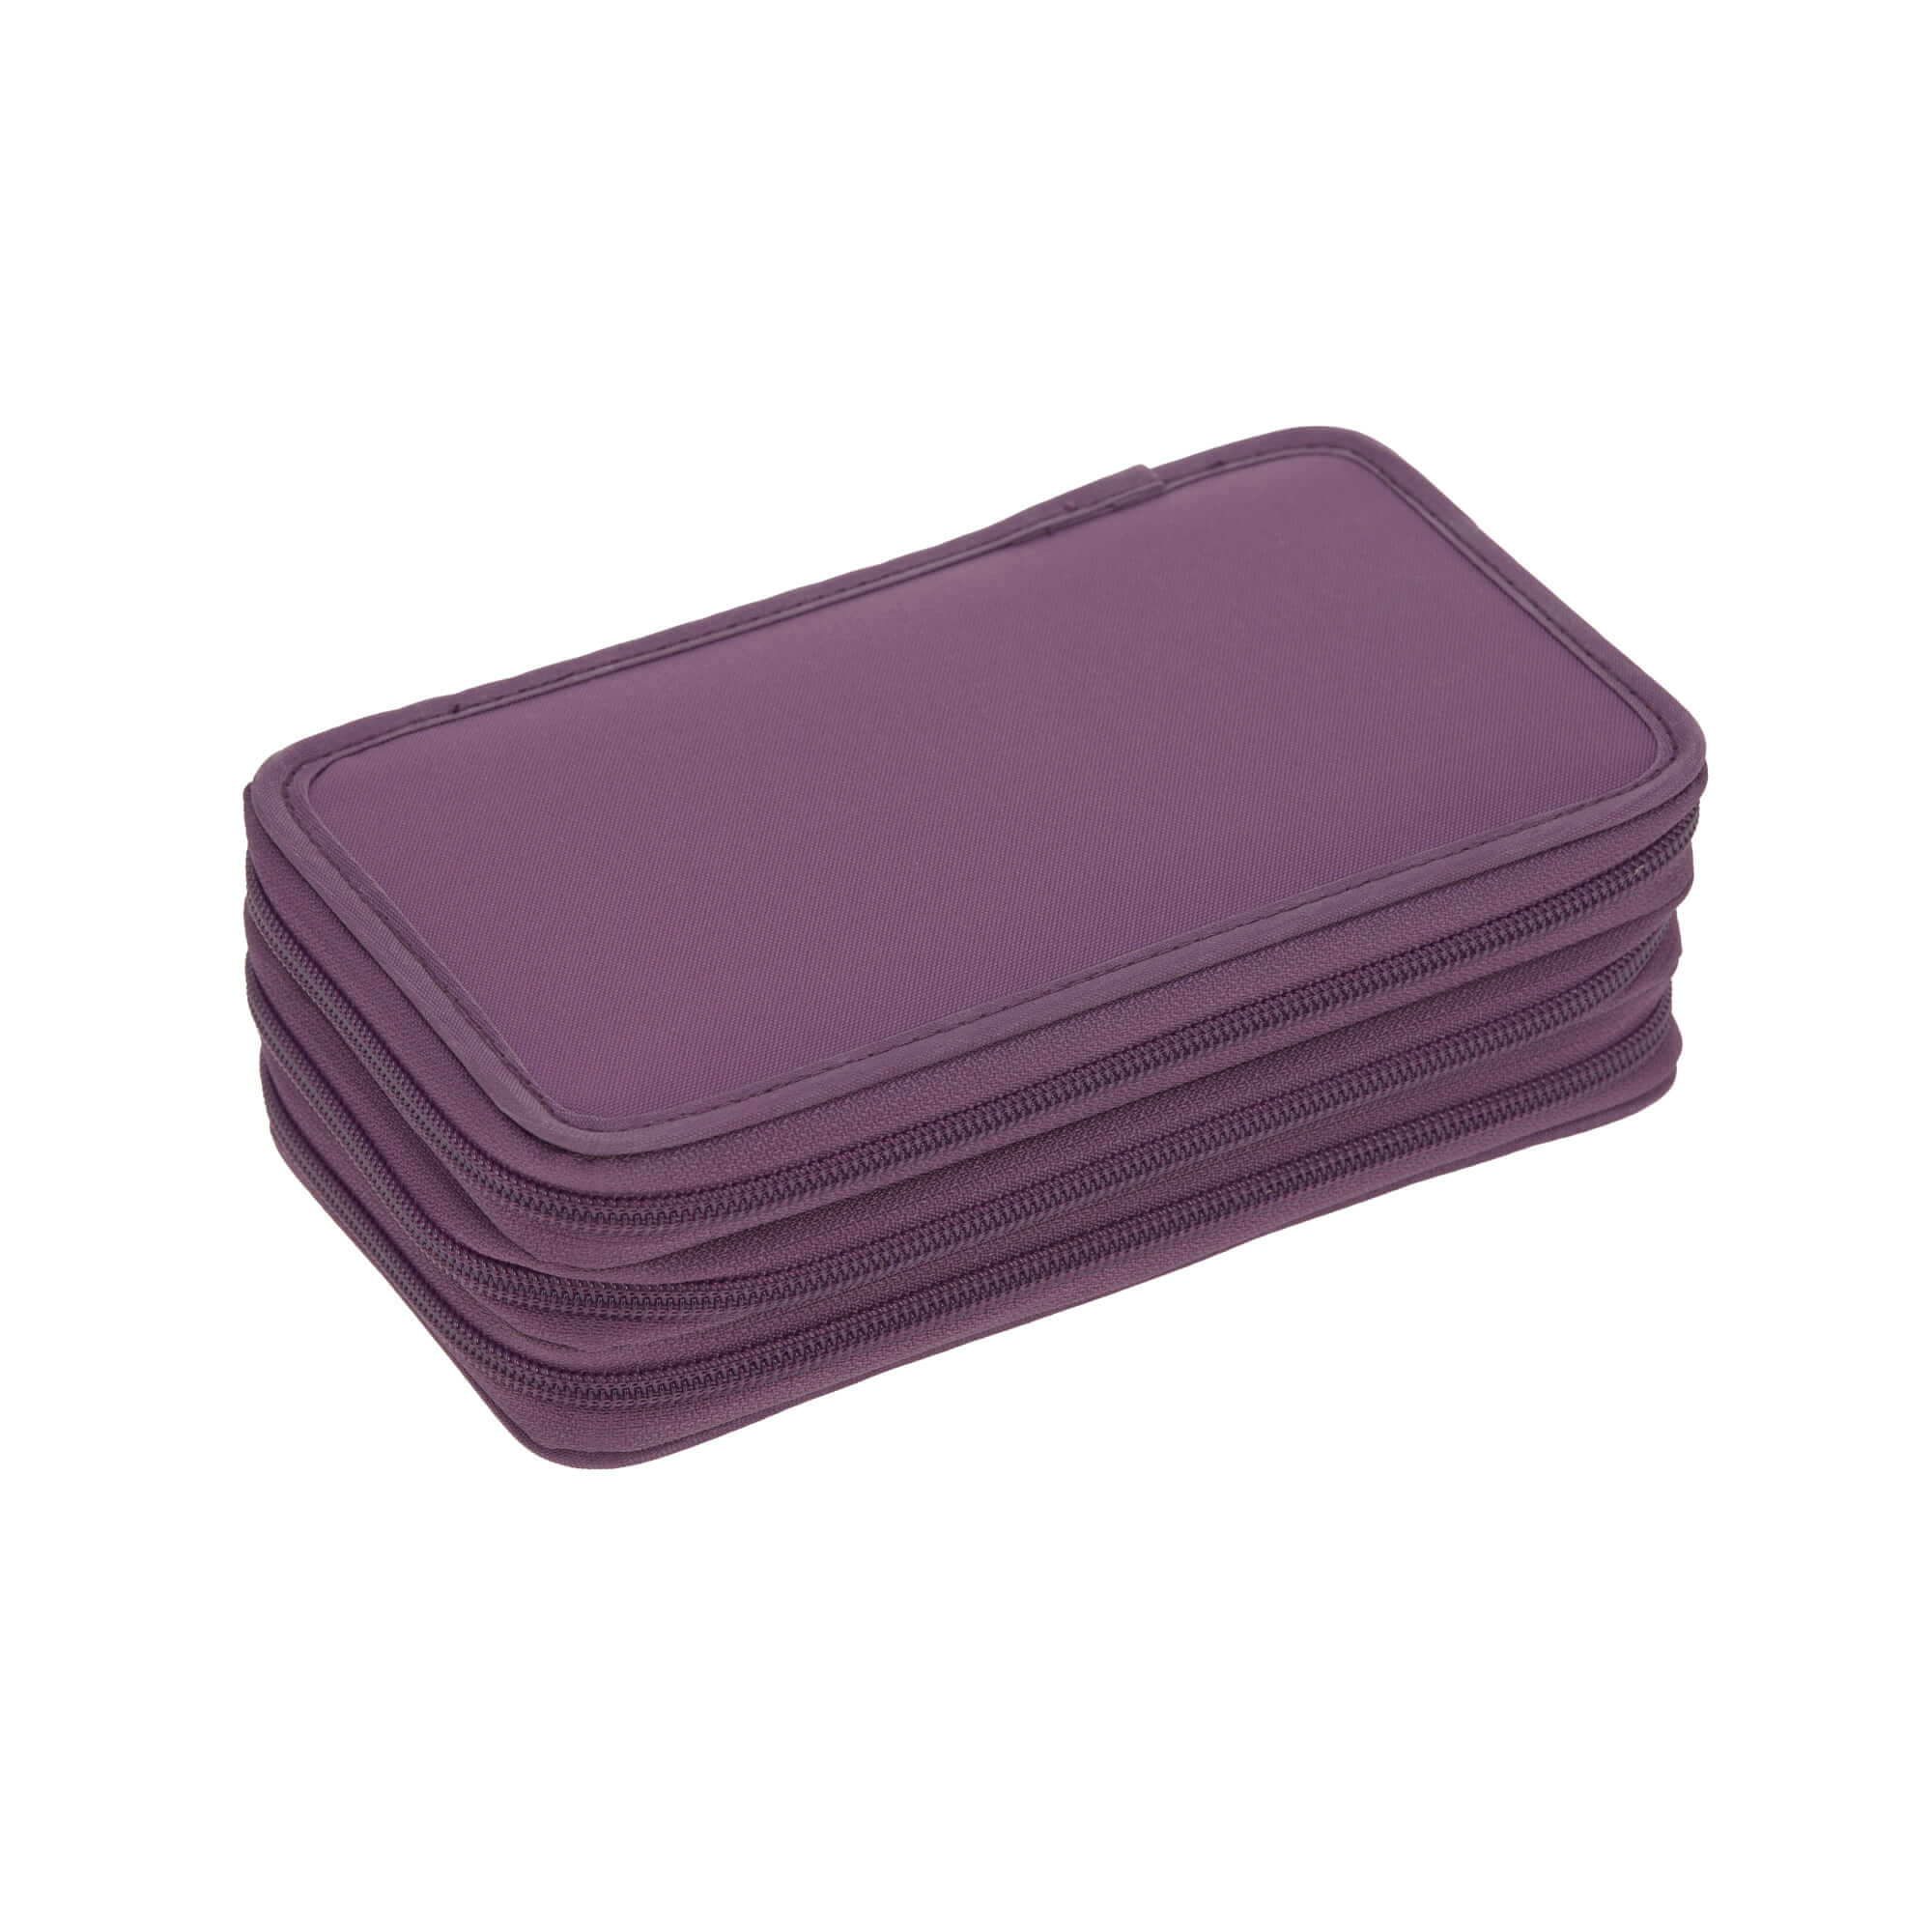 Lässig Federmäppchen 3 fach Purple im Online kaufen günstig Shop